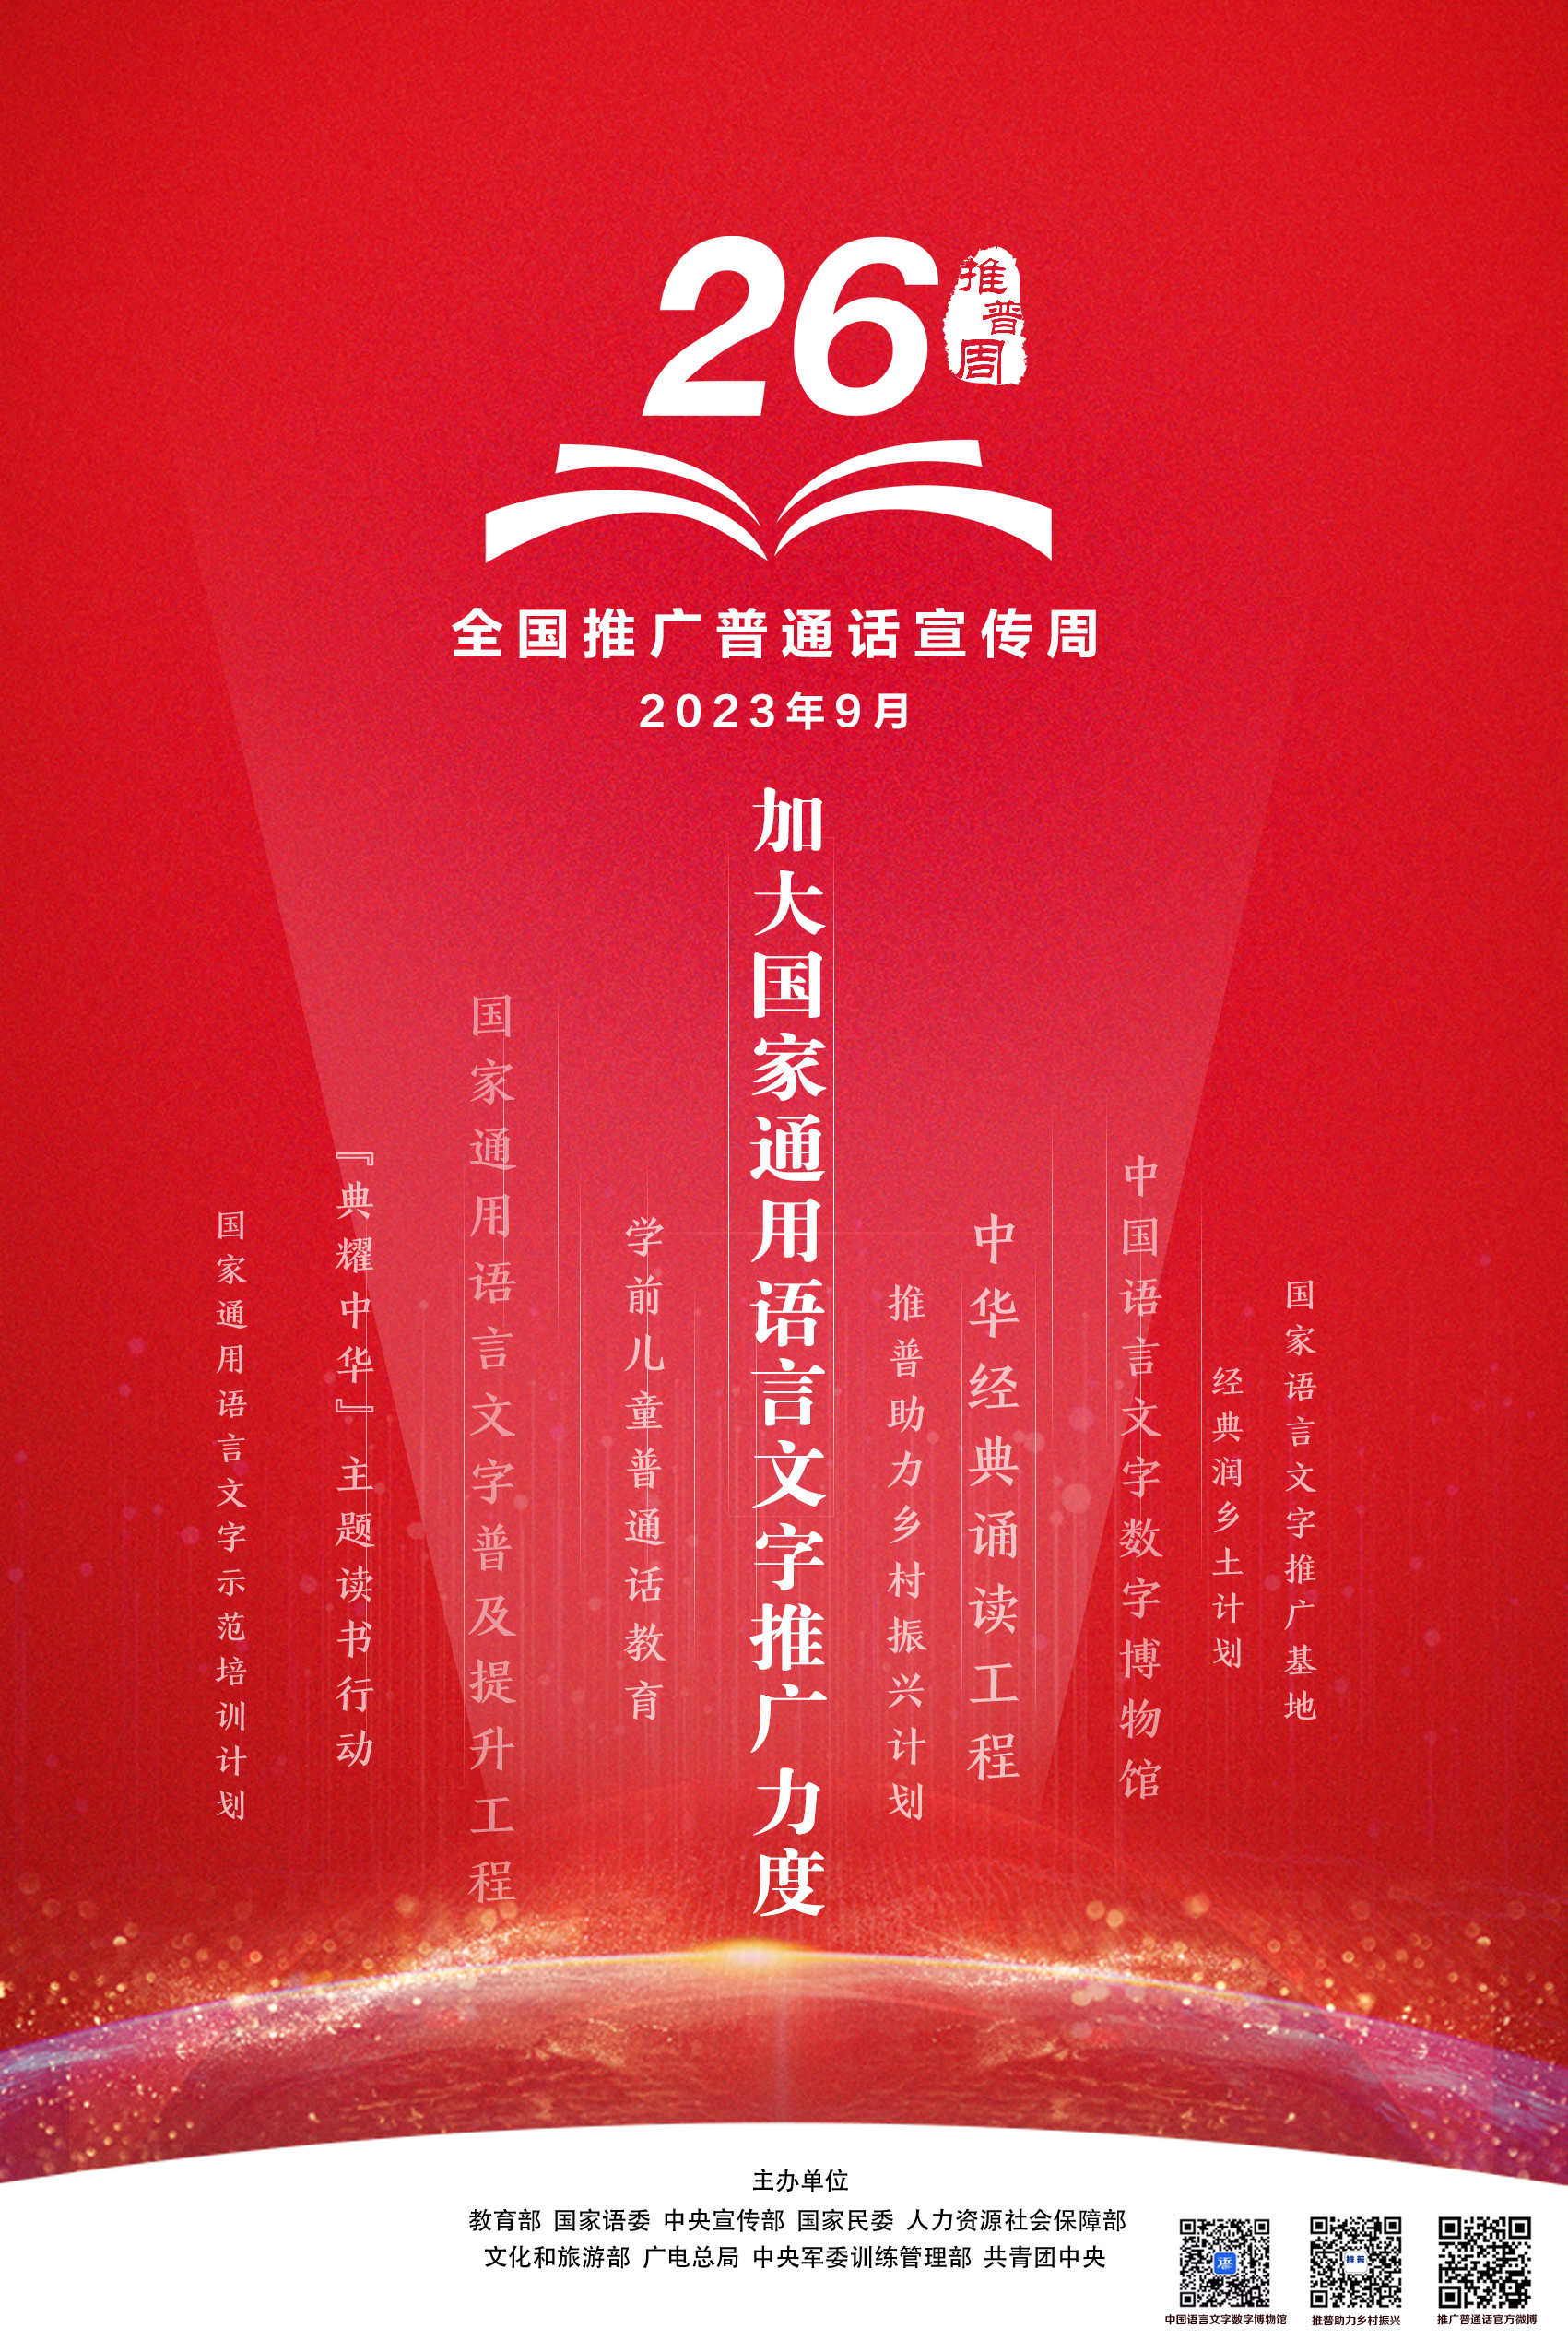 市政数局开展第26届全国推广普通话宣传周活动